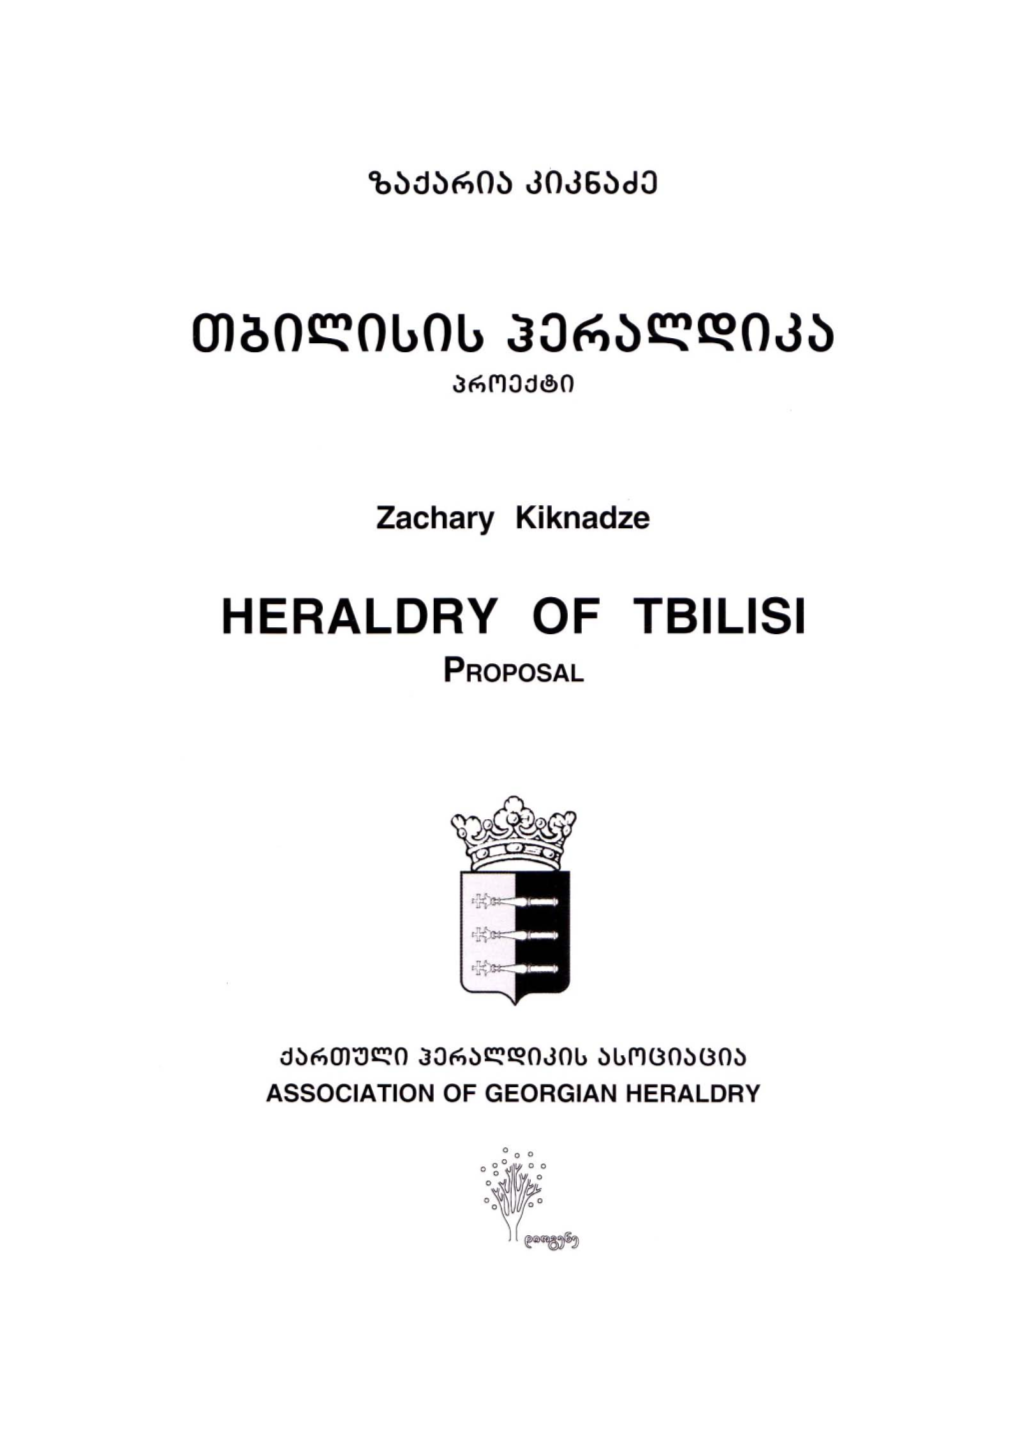 Z.Kiknadze Heraldry of Tbilisi.Pdf